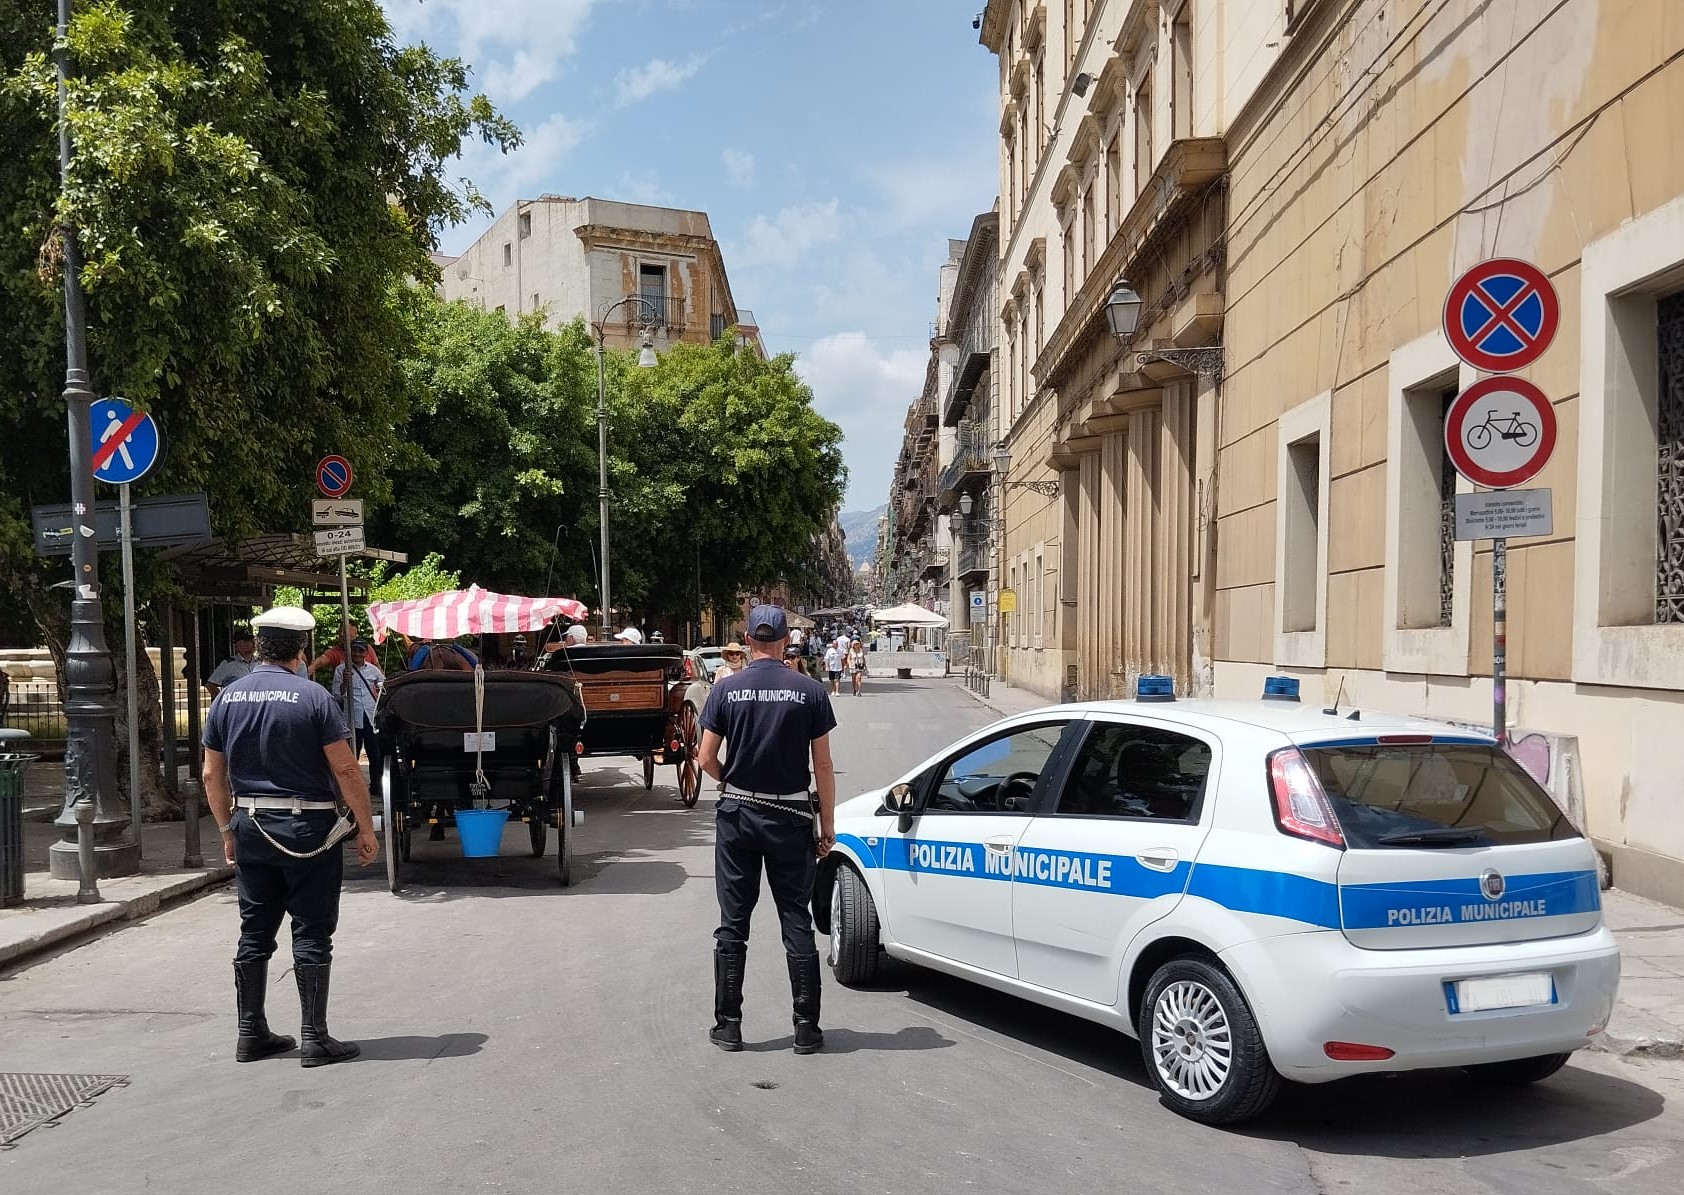 Sequestrate a Palermo tre carrozze abusive, continua la lotta contro gli “gnuri”